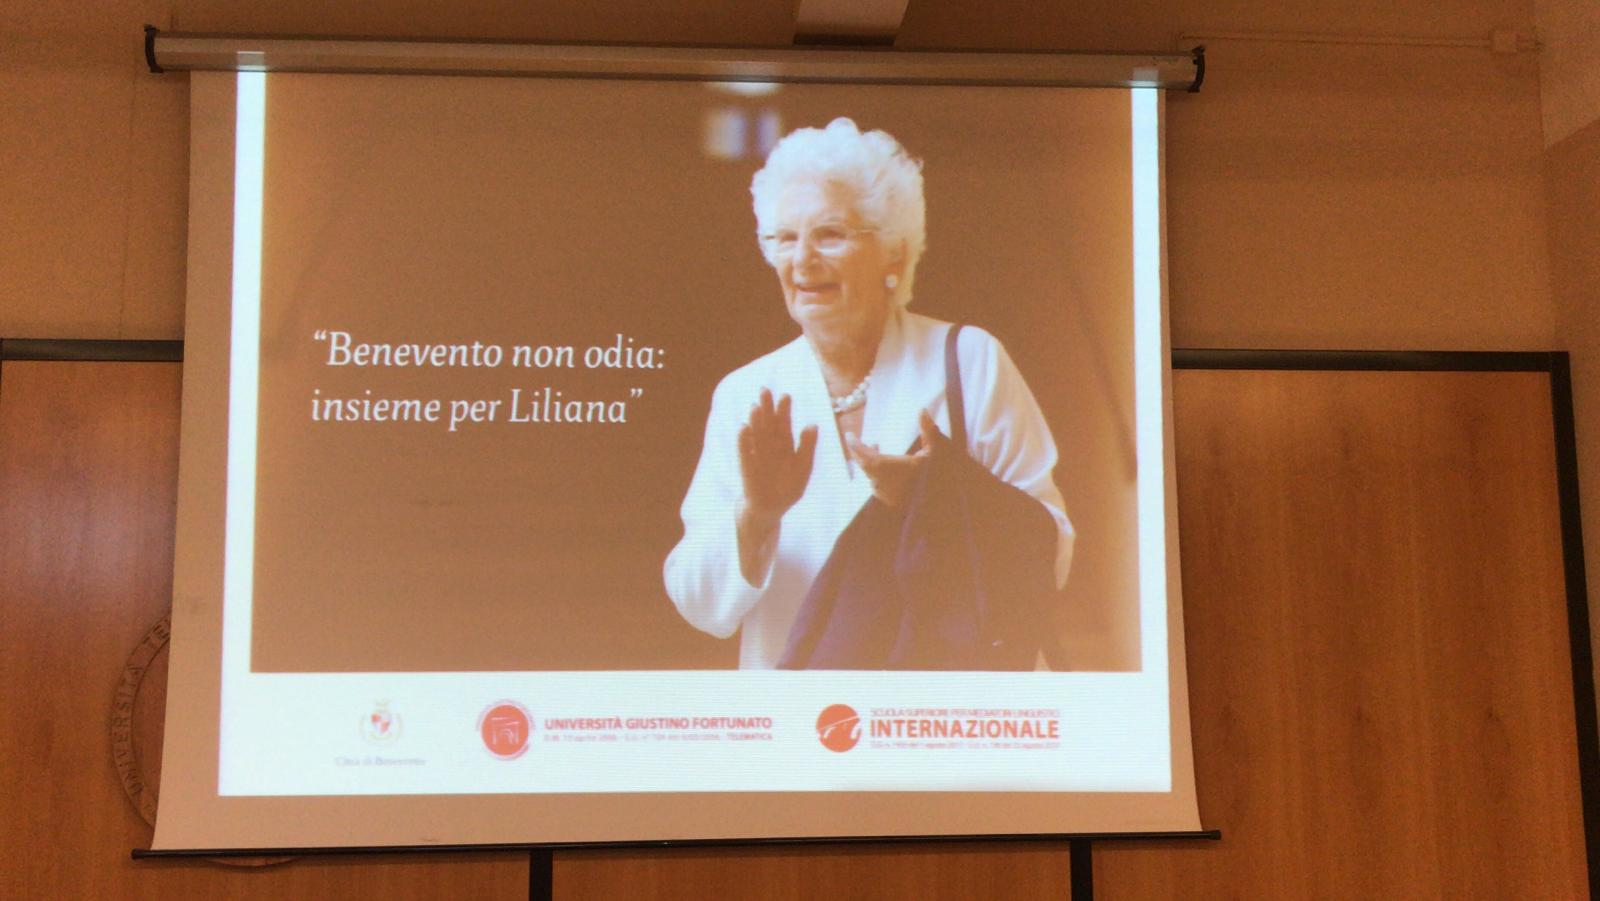 Benevento| #BeneventoNonOdia, l’iniziativa a sostegno della senatrice Liliana Segre